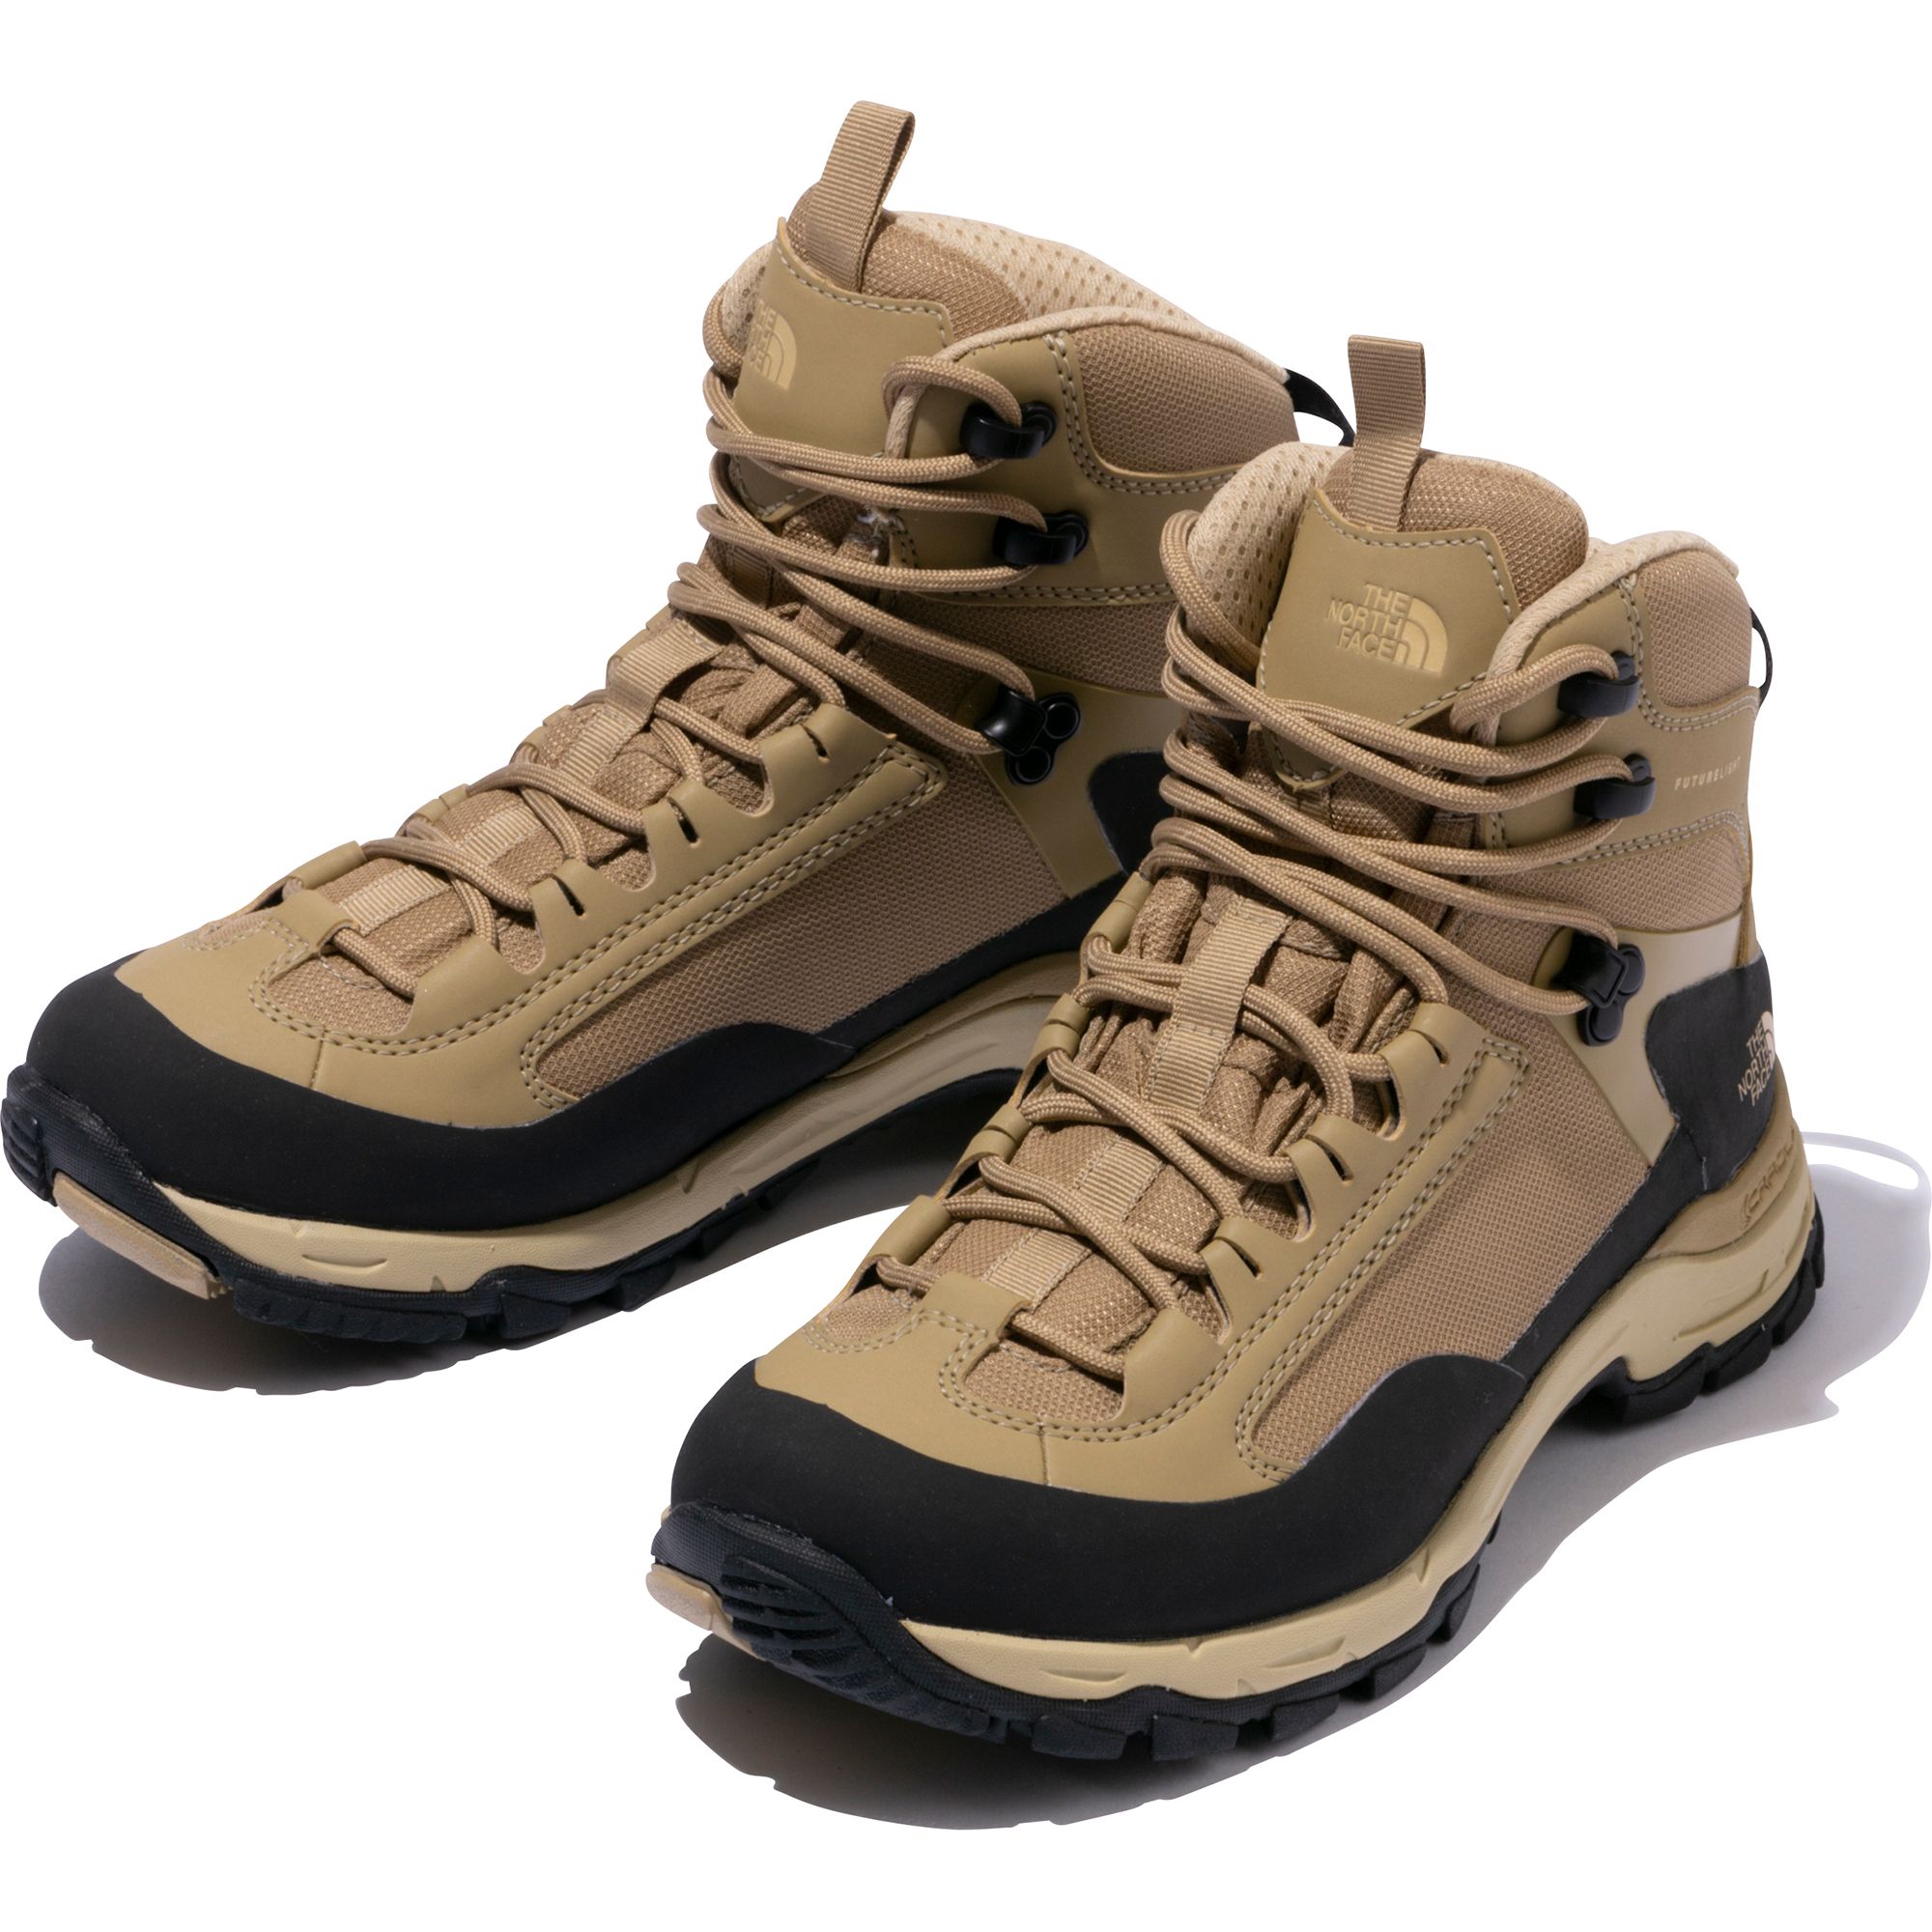 限定版 みかん様専用ノースフェイス レディース登山靴 NFW52020 サイズ 